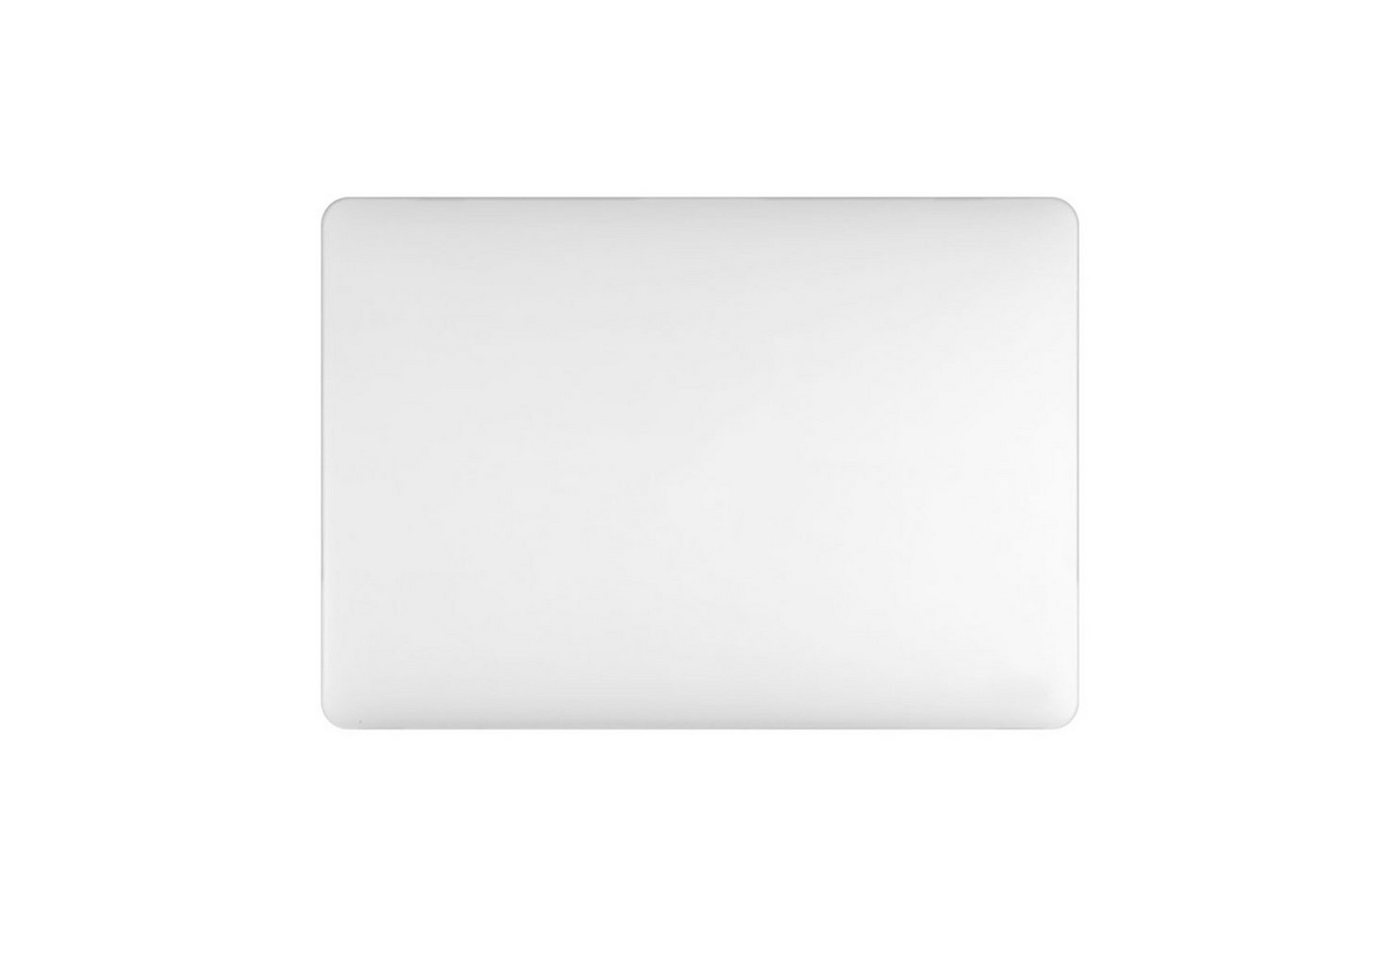 KMP Creative Lifesytle Product Laptop-Hülle Schutzhülle für 13 MacBook Pro mit touch bar White-Translucent 33,02 cm (13 Zoll), Hülle, Tasche, leicht, Schutz, Schale, dünn, Laptop Hülle, Schutzhülle" von KMP Creative Lifesytle Product